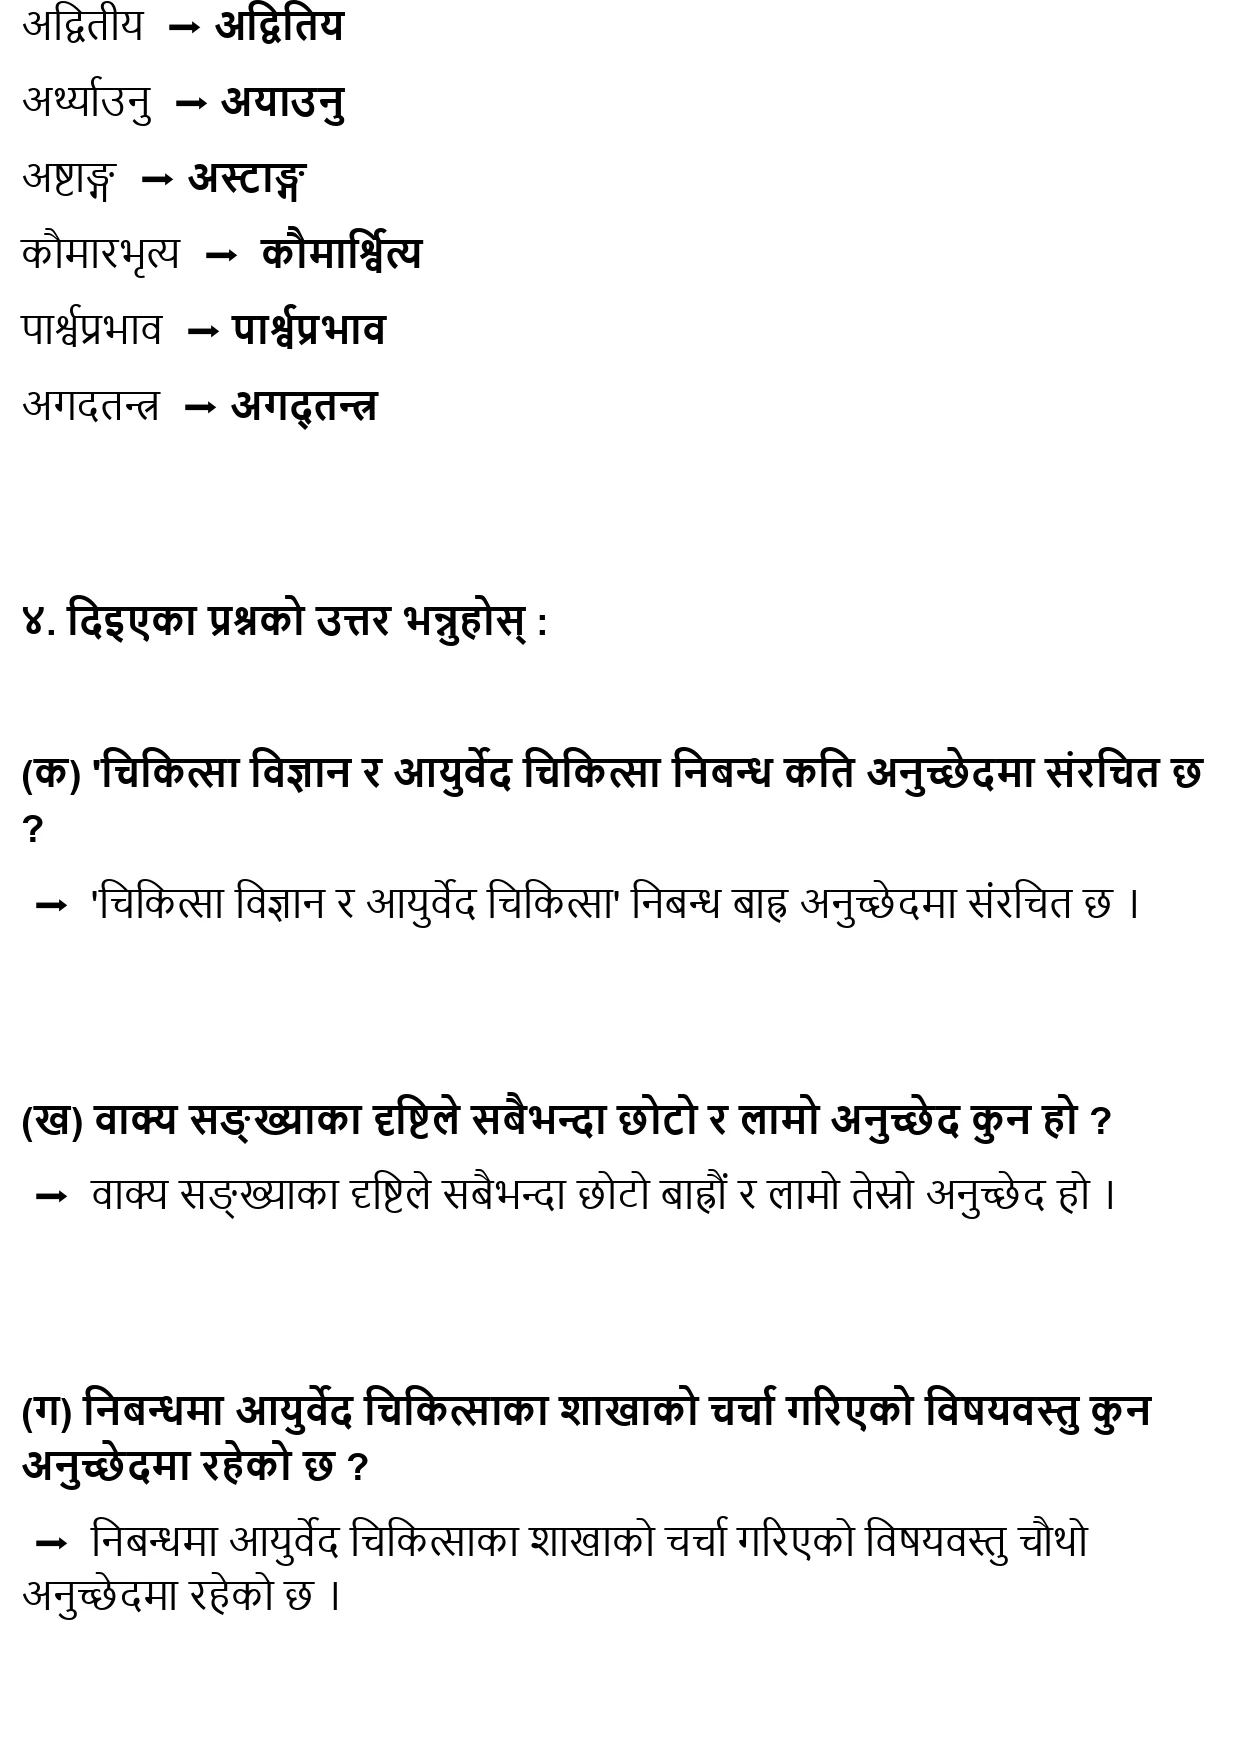 Chikitsa Bigyan Ra Ayurvedic Chikitsa: Class 10 Nepali Unit 3